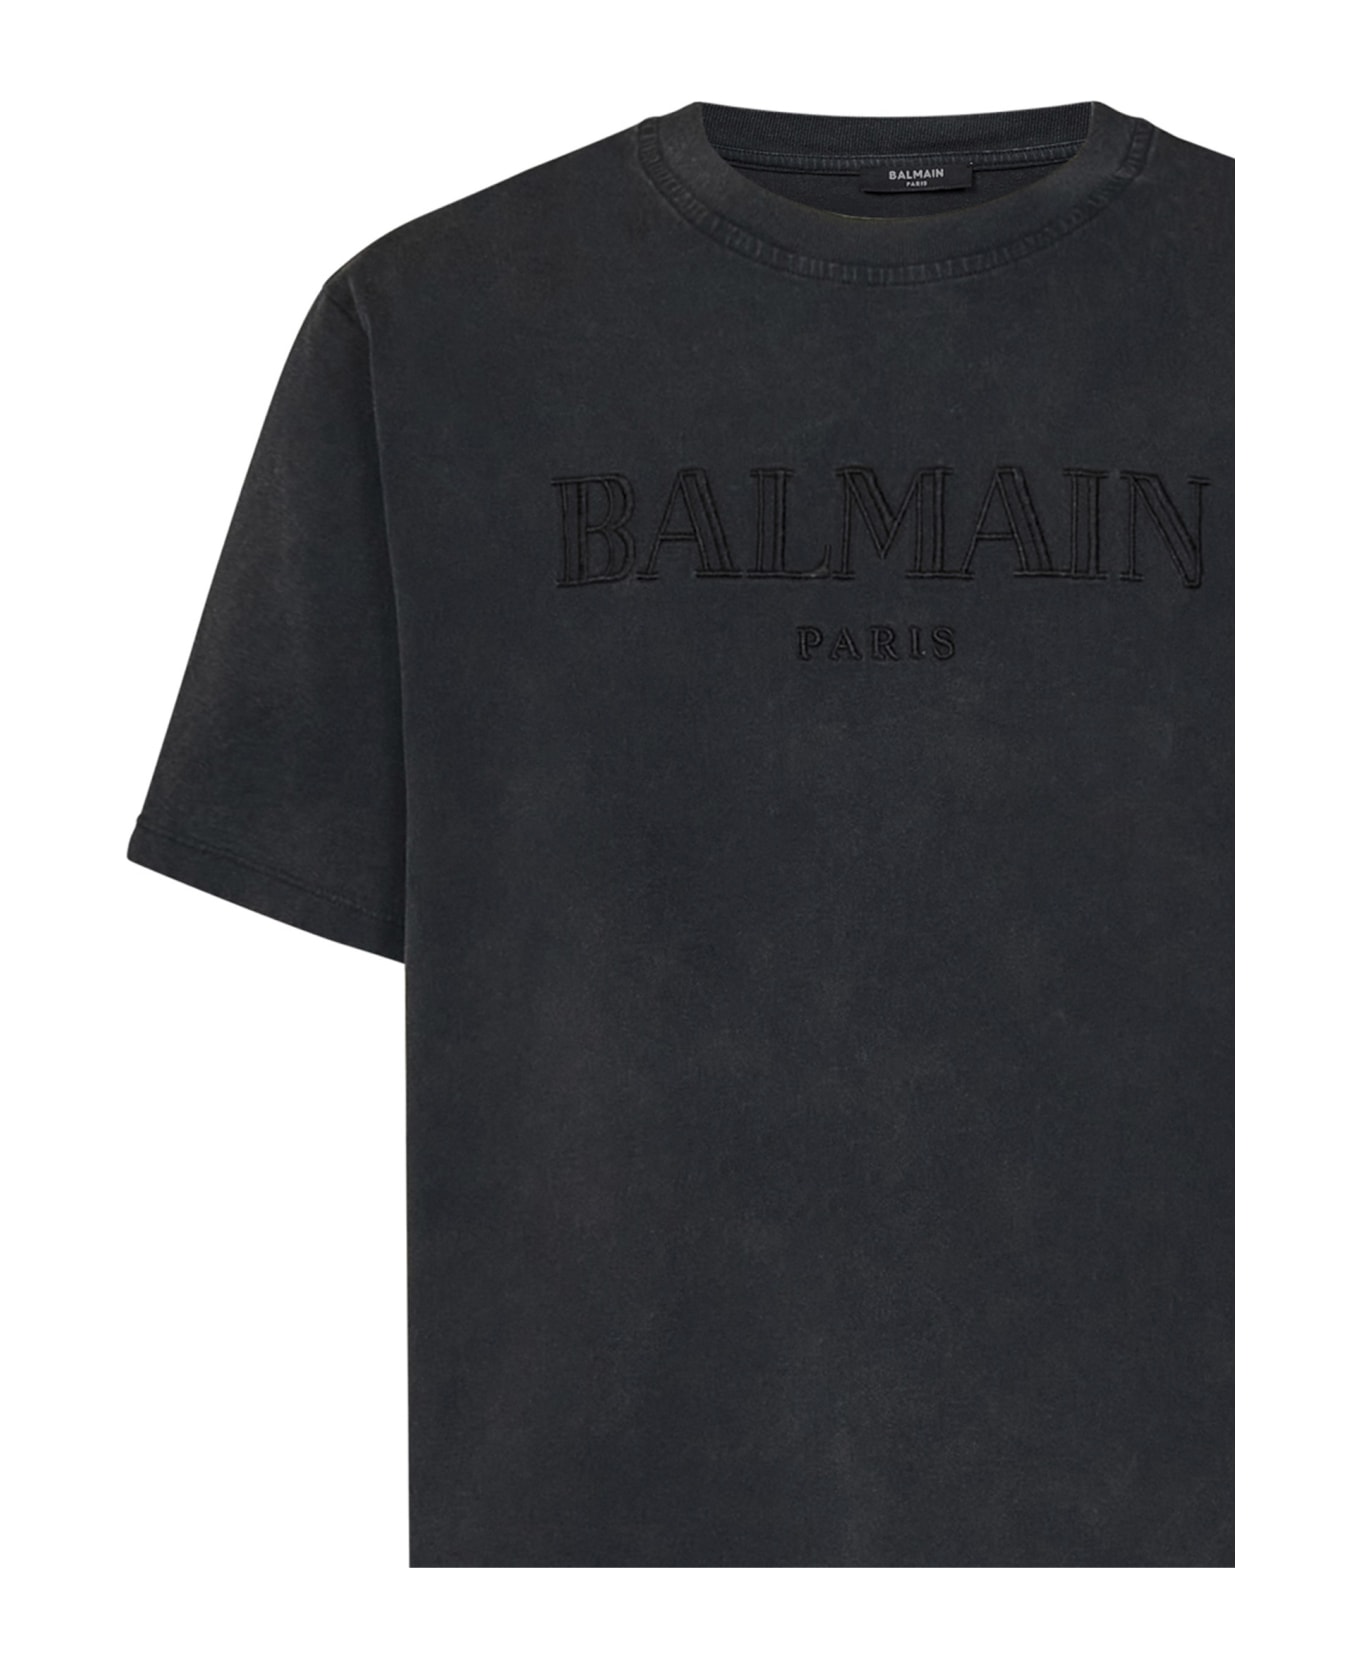 Balmain Paris T-shirt - Grey